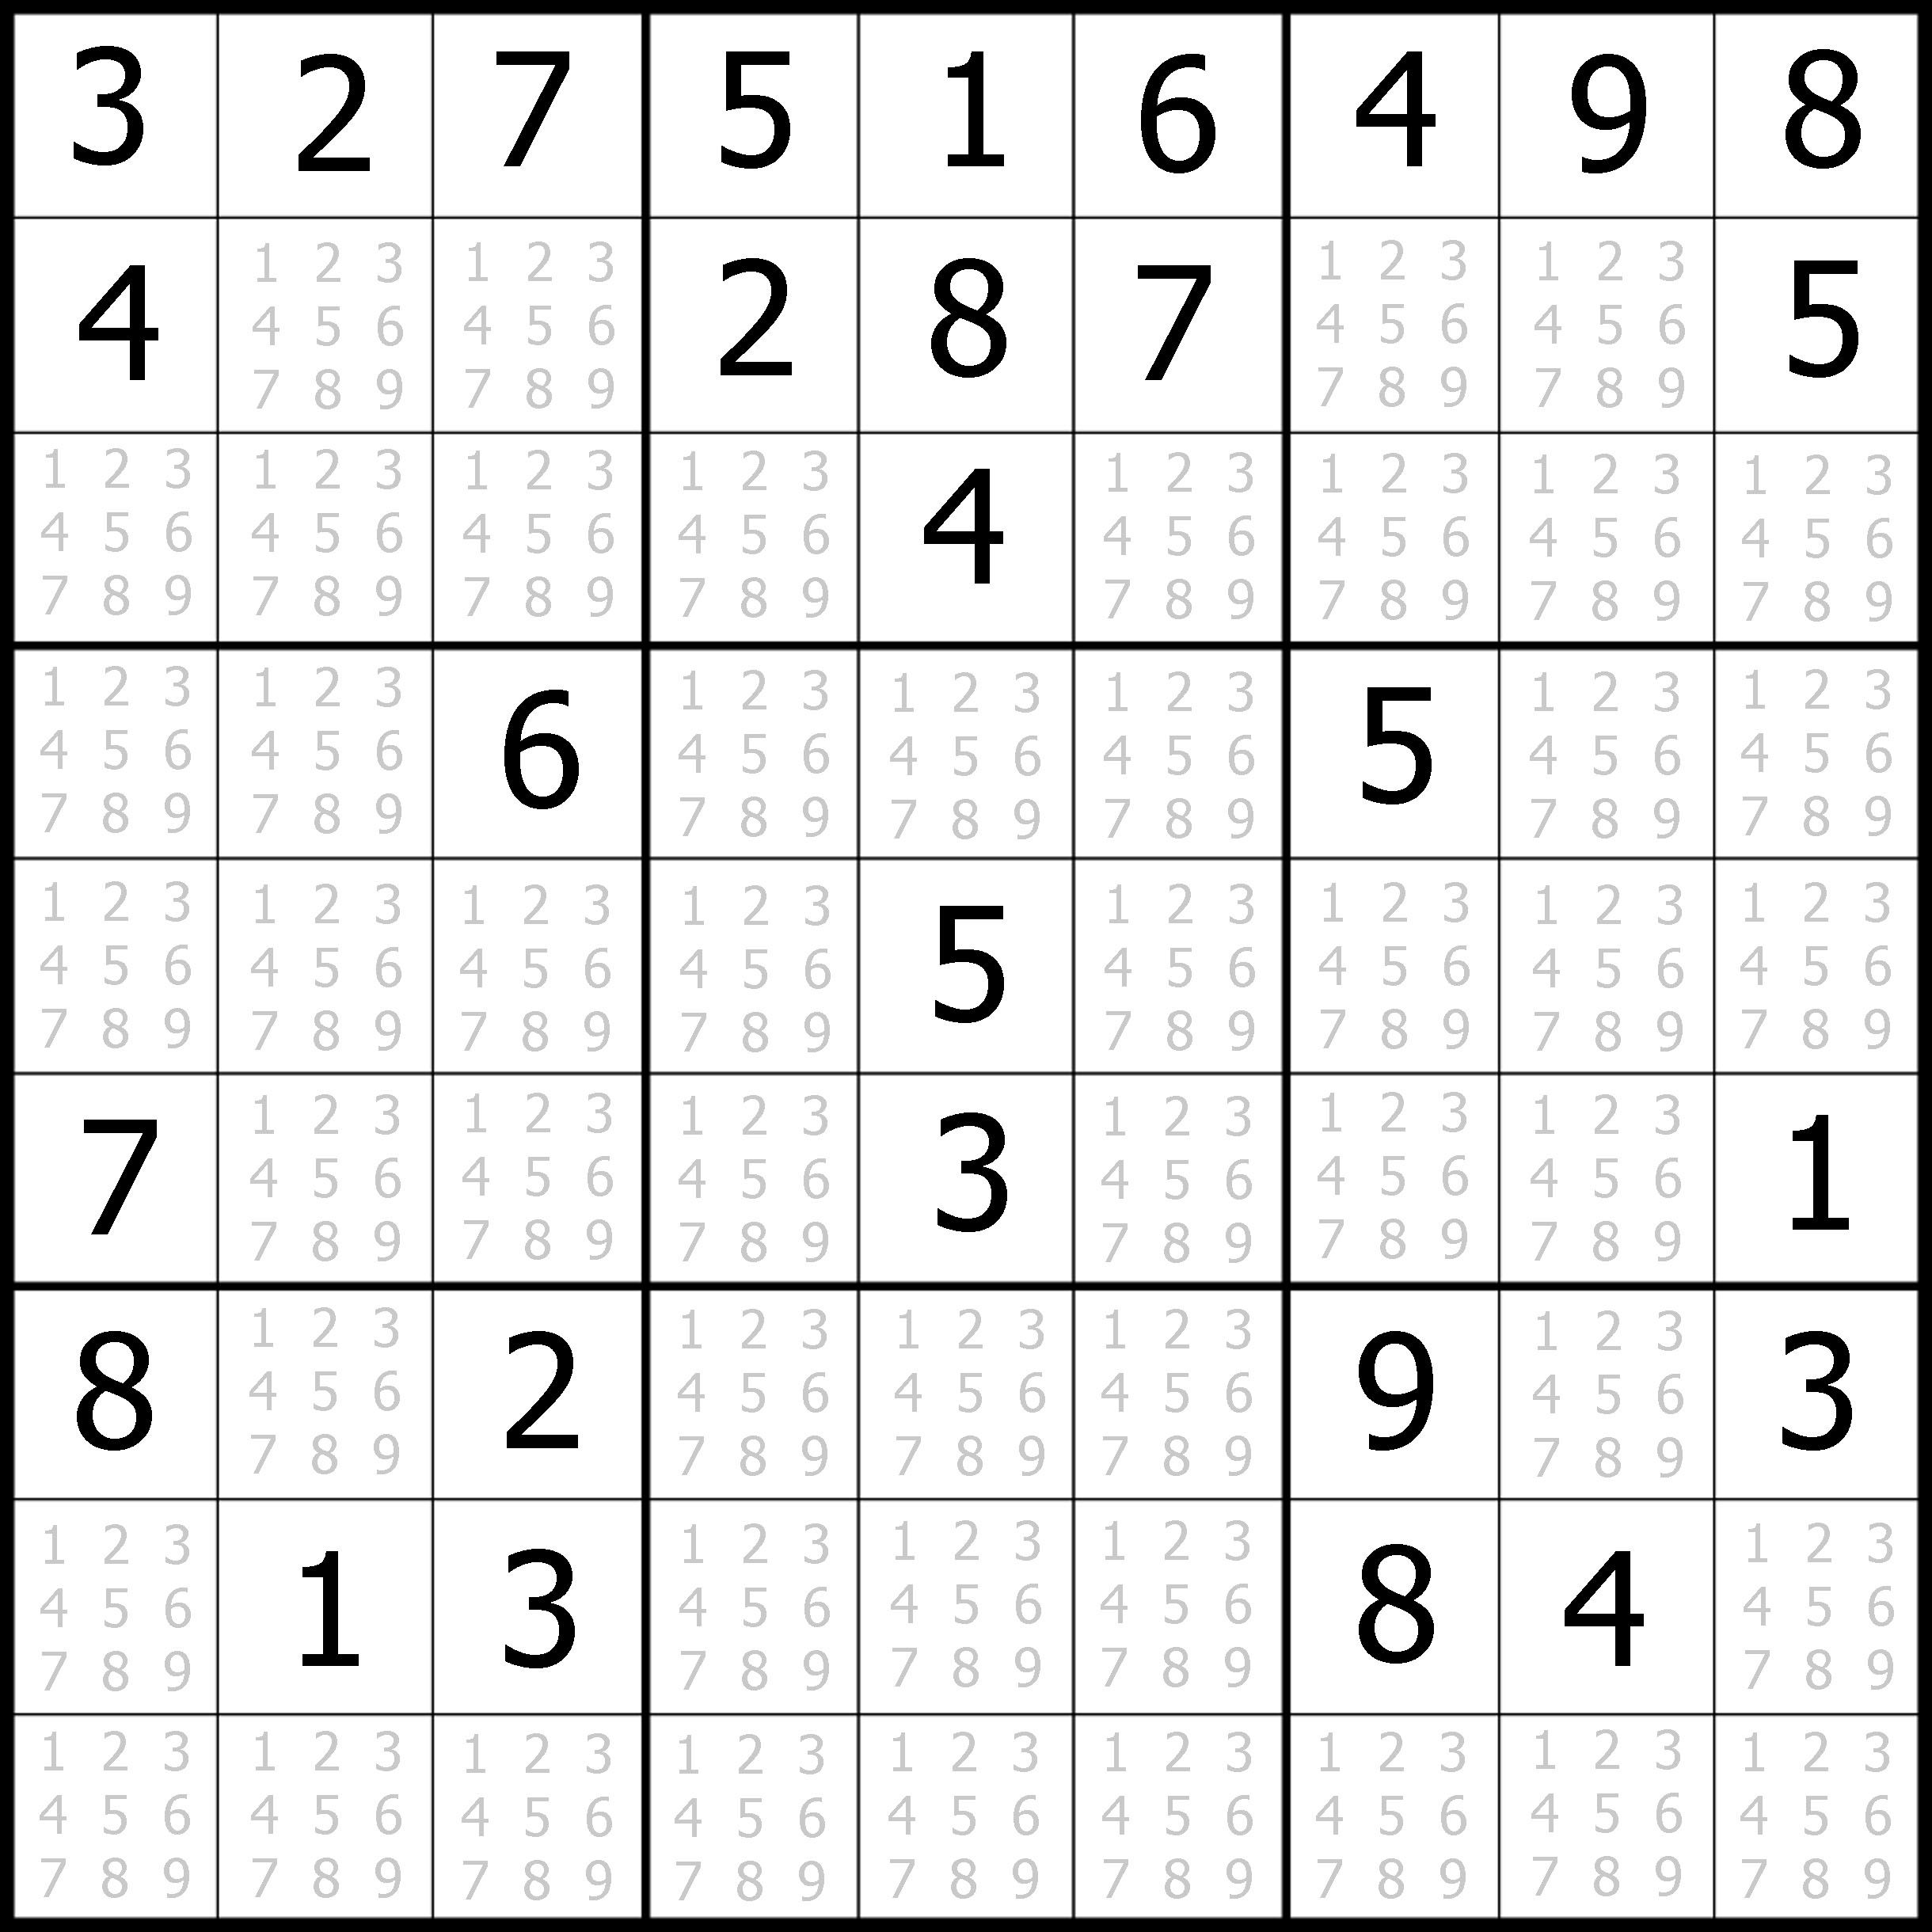 Sudoku Printable | Free, Medium, Printable Sudoku Puzzle #1 | My - Printable Sudoku Puzzles Easy #1 Answers